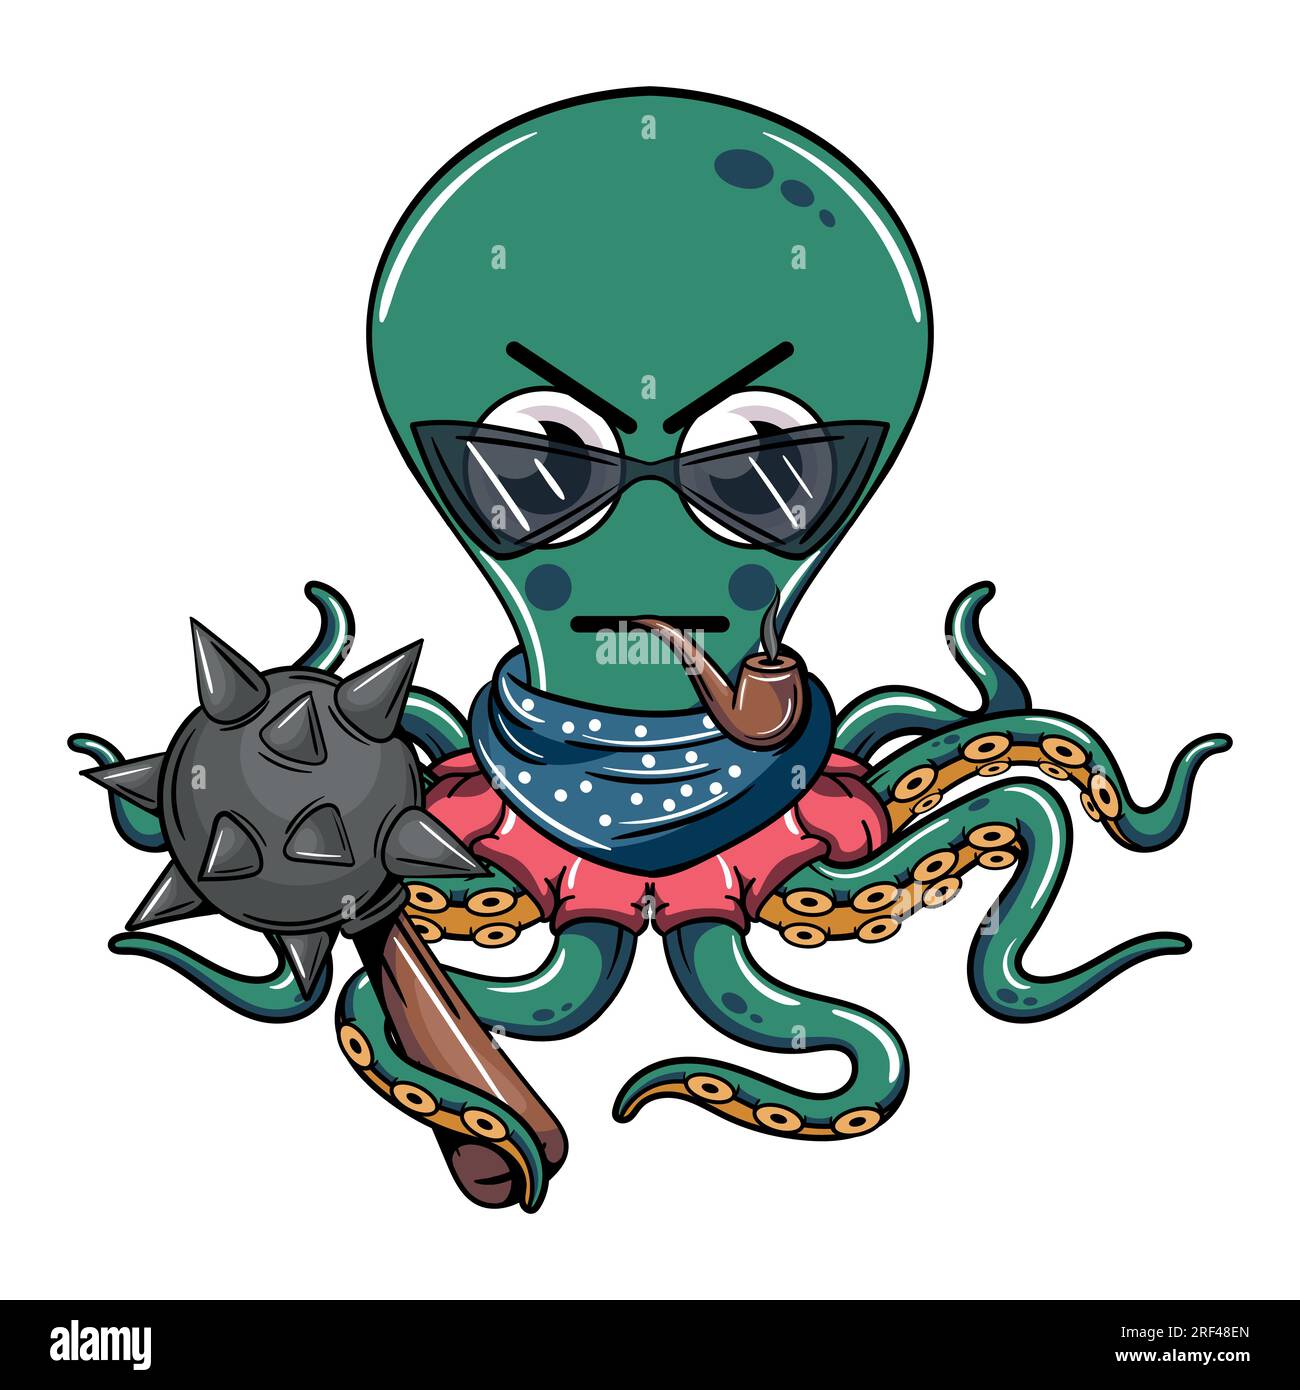 Cartoon-Cyborg-Oktopus-Figur mit Brille, die eine Pfeife mit einer Kriegspferde raucht. Illustration für Fantasie, Science-Fiction und Abenteuer-Comics Stock Vektor